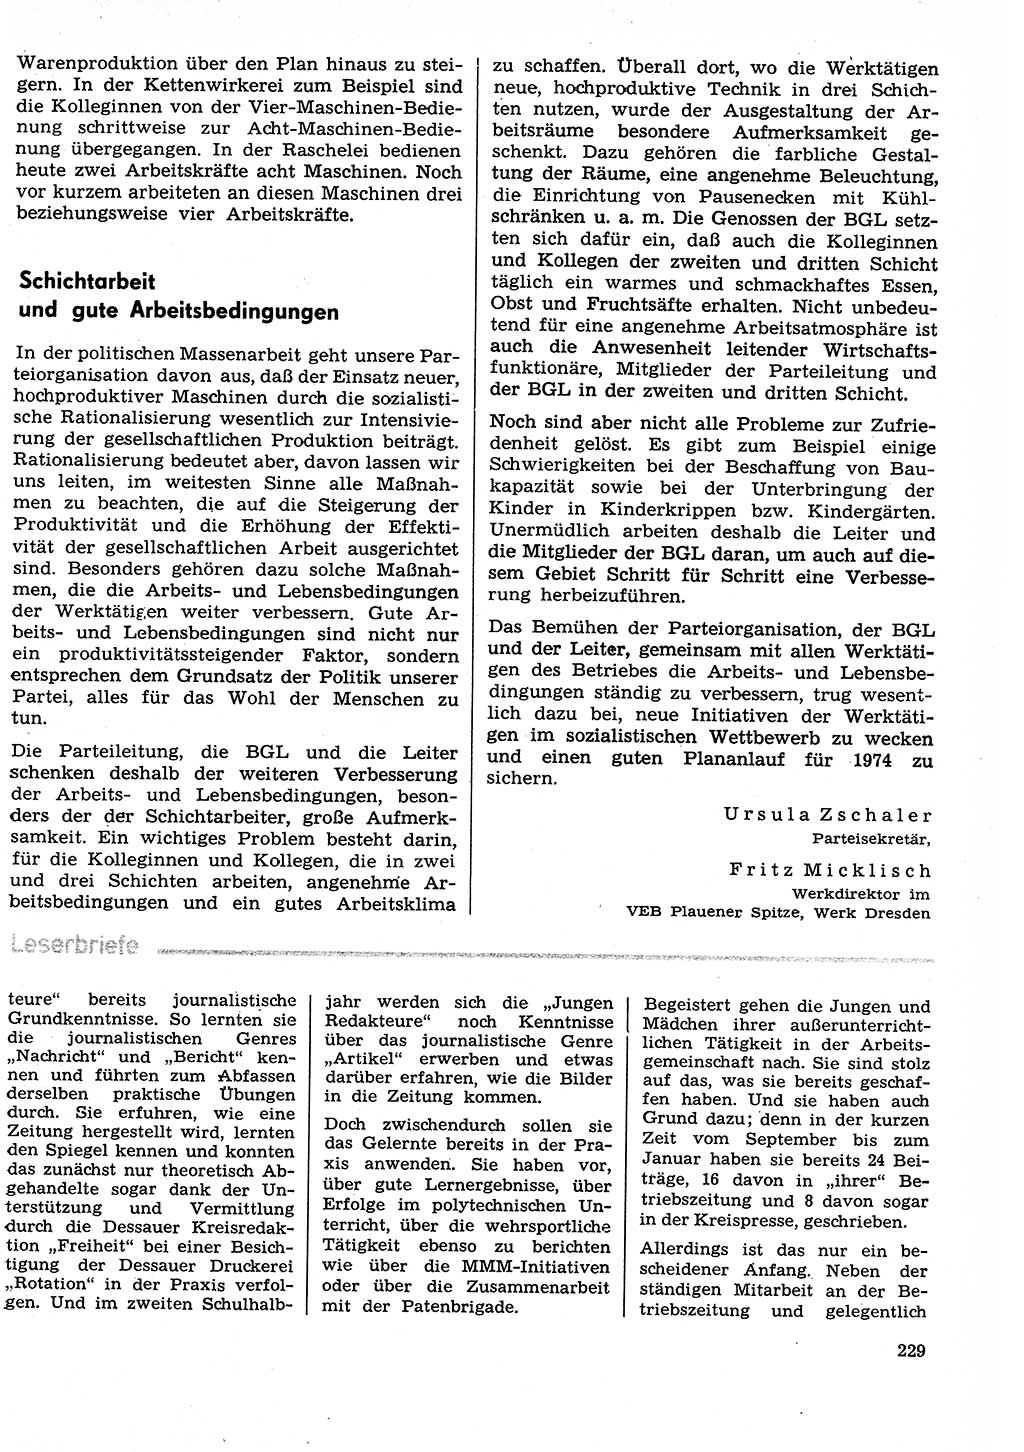 Neuer Weg (NW), Organ des Zentralkomitees (ZK) der SED (Sozialistische Einheitspartei Deutschlands) für Fragen des Parteilebens, 29. Jahrgang [Deutsche Demokratische Republik (DDR)] 1974, Seite 229 (NW ZK SED DDR 1974, S. 229)